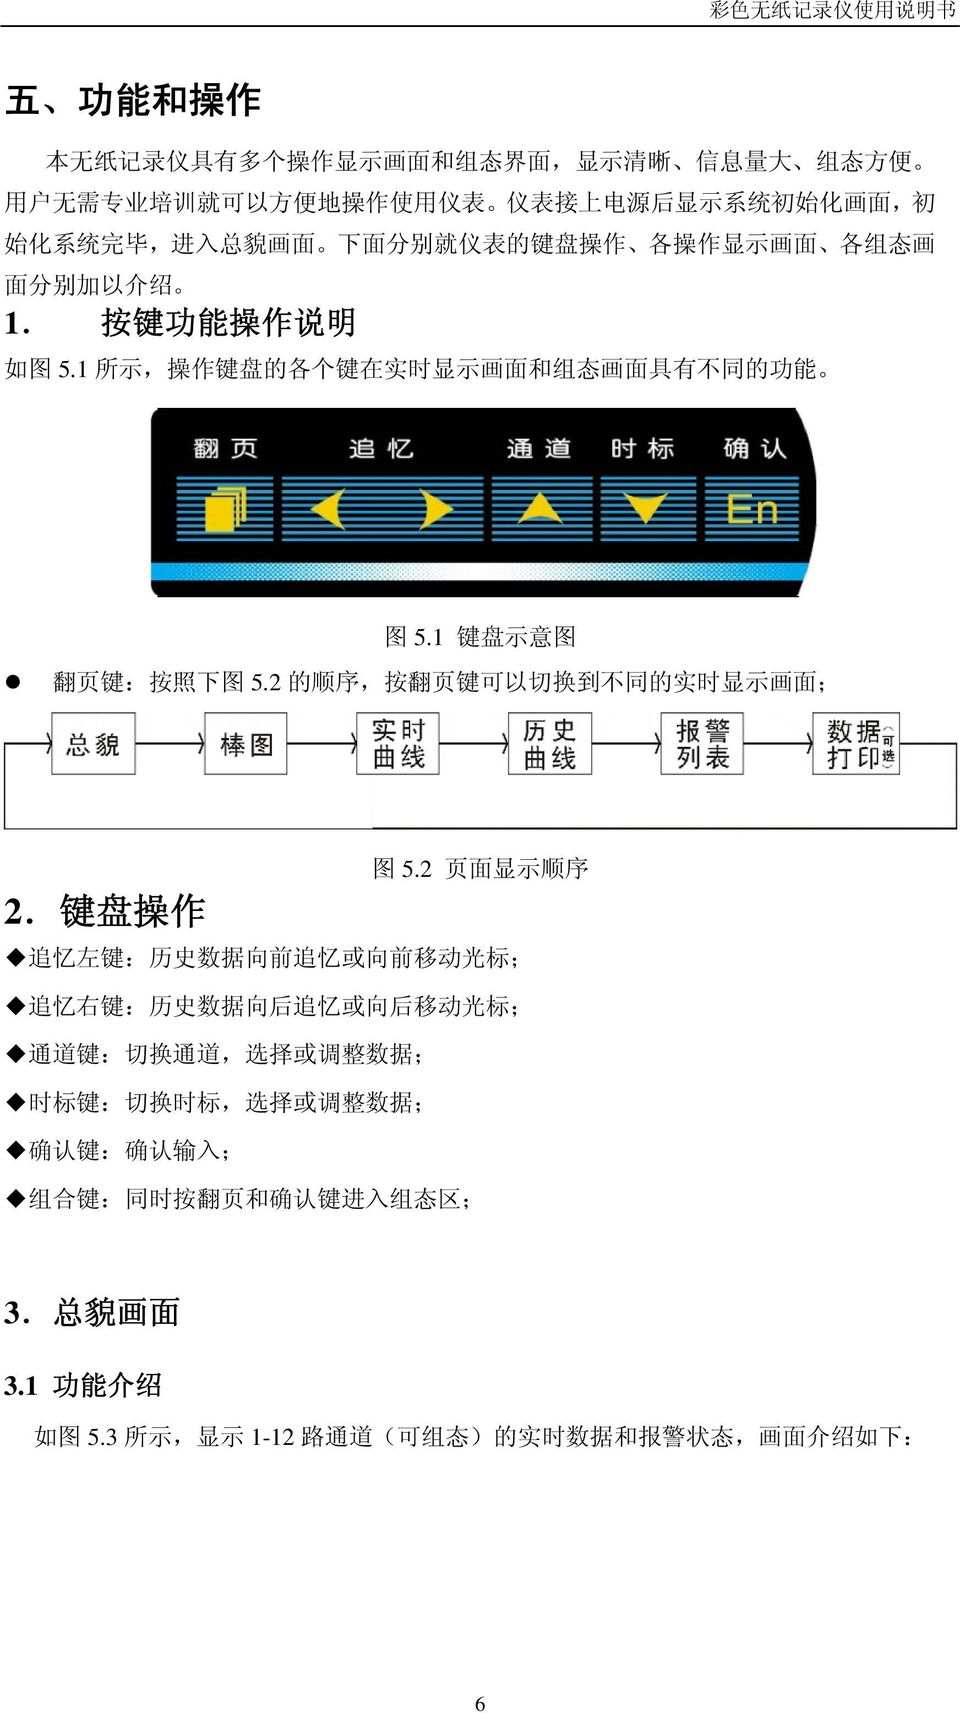 2 的 顺 序, 按 翻 页 键 可 以 切 换 到 不 同 的 实 时 显 示 画 面 ; 2. 键 盘 操 作 图 5.